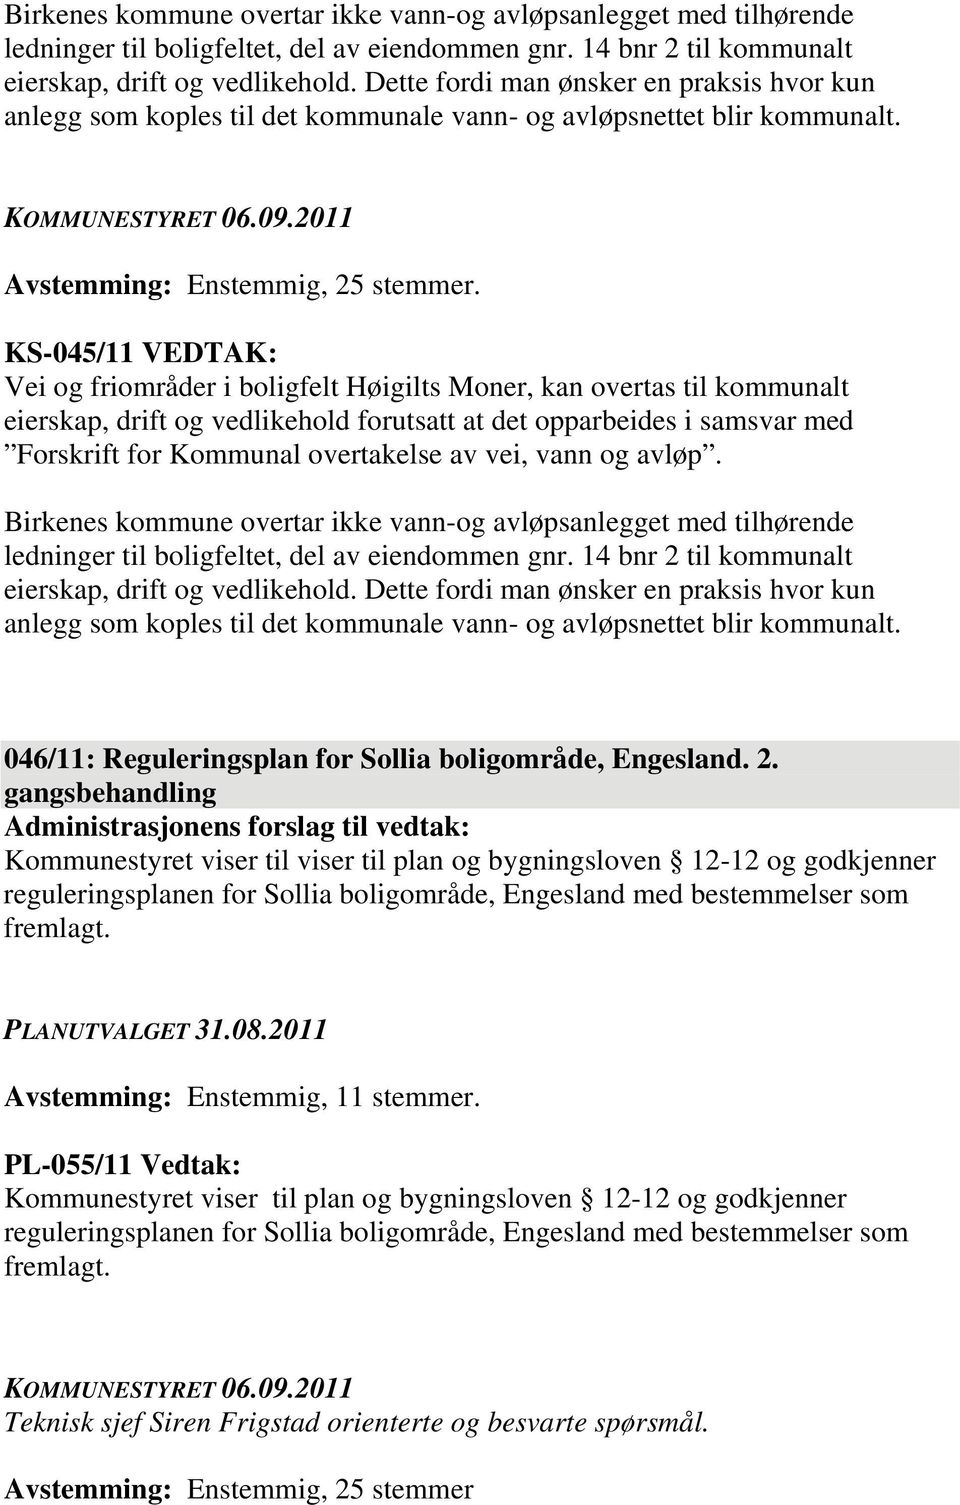 KS-045/11 VEDTAK: Vei og friområder i boligfelt Høigilts Moner, kan overtas til kommunalt eierskap, drift og vedlikehold forutsatt at det opparbeides i samsvar med Forskrift for Kommunal overtakelse